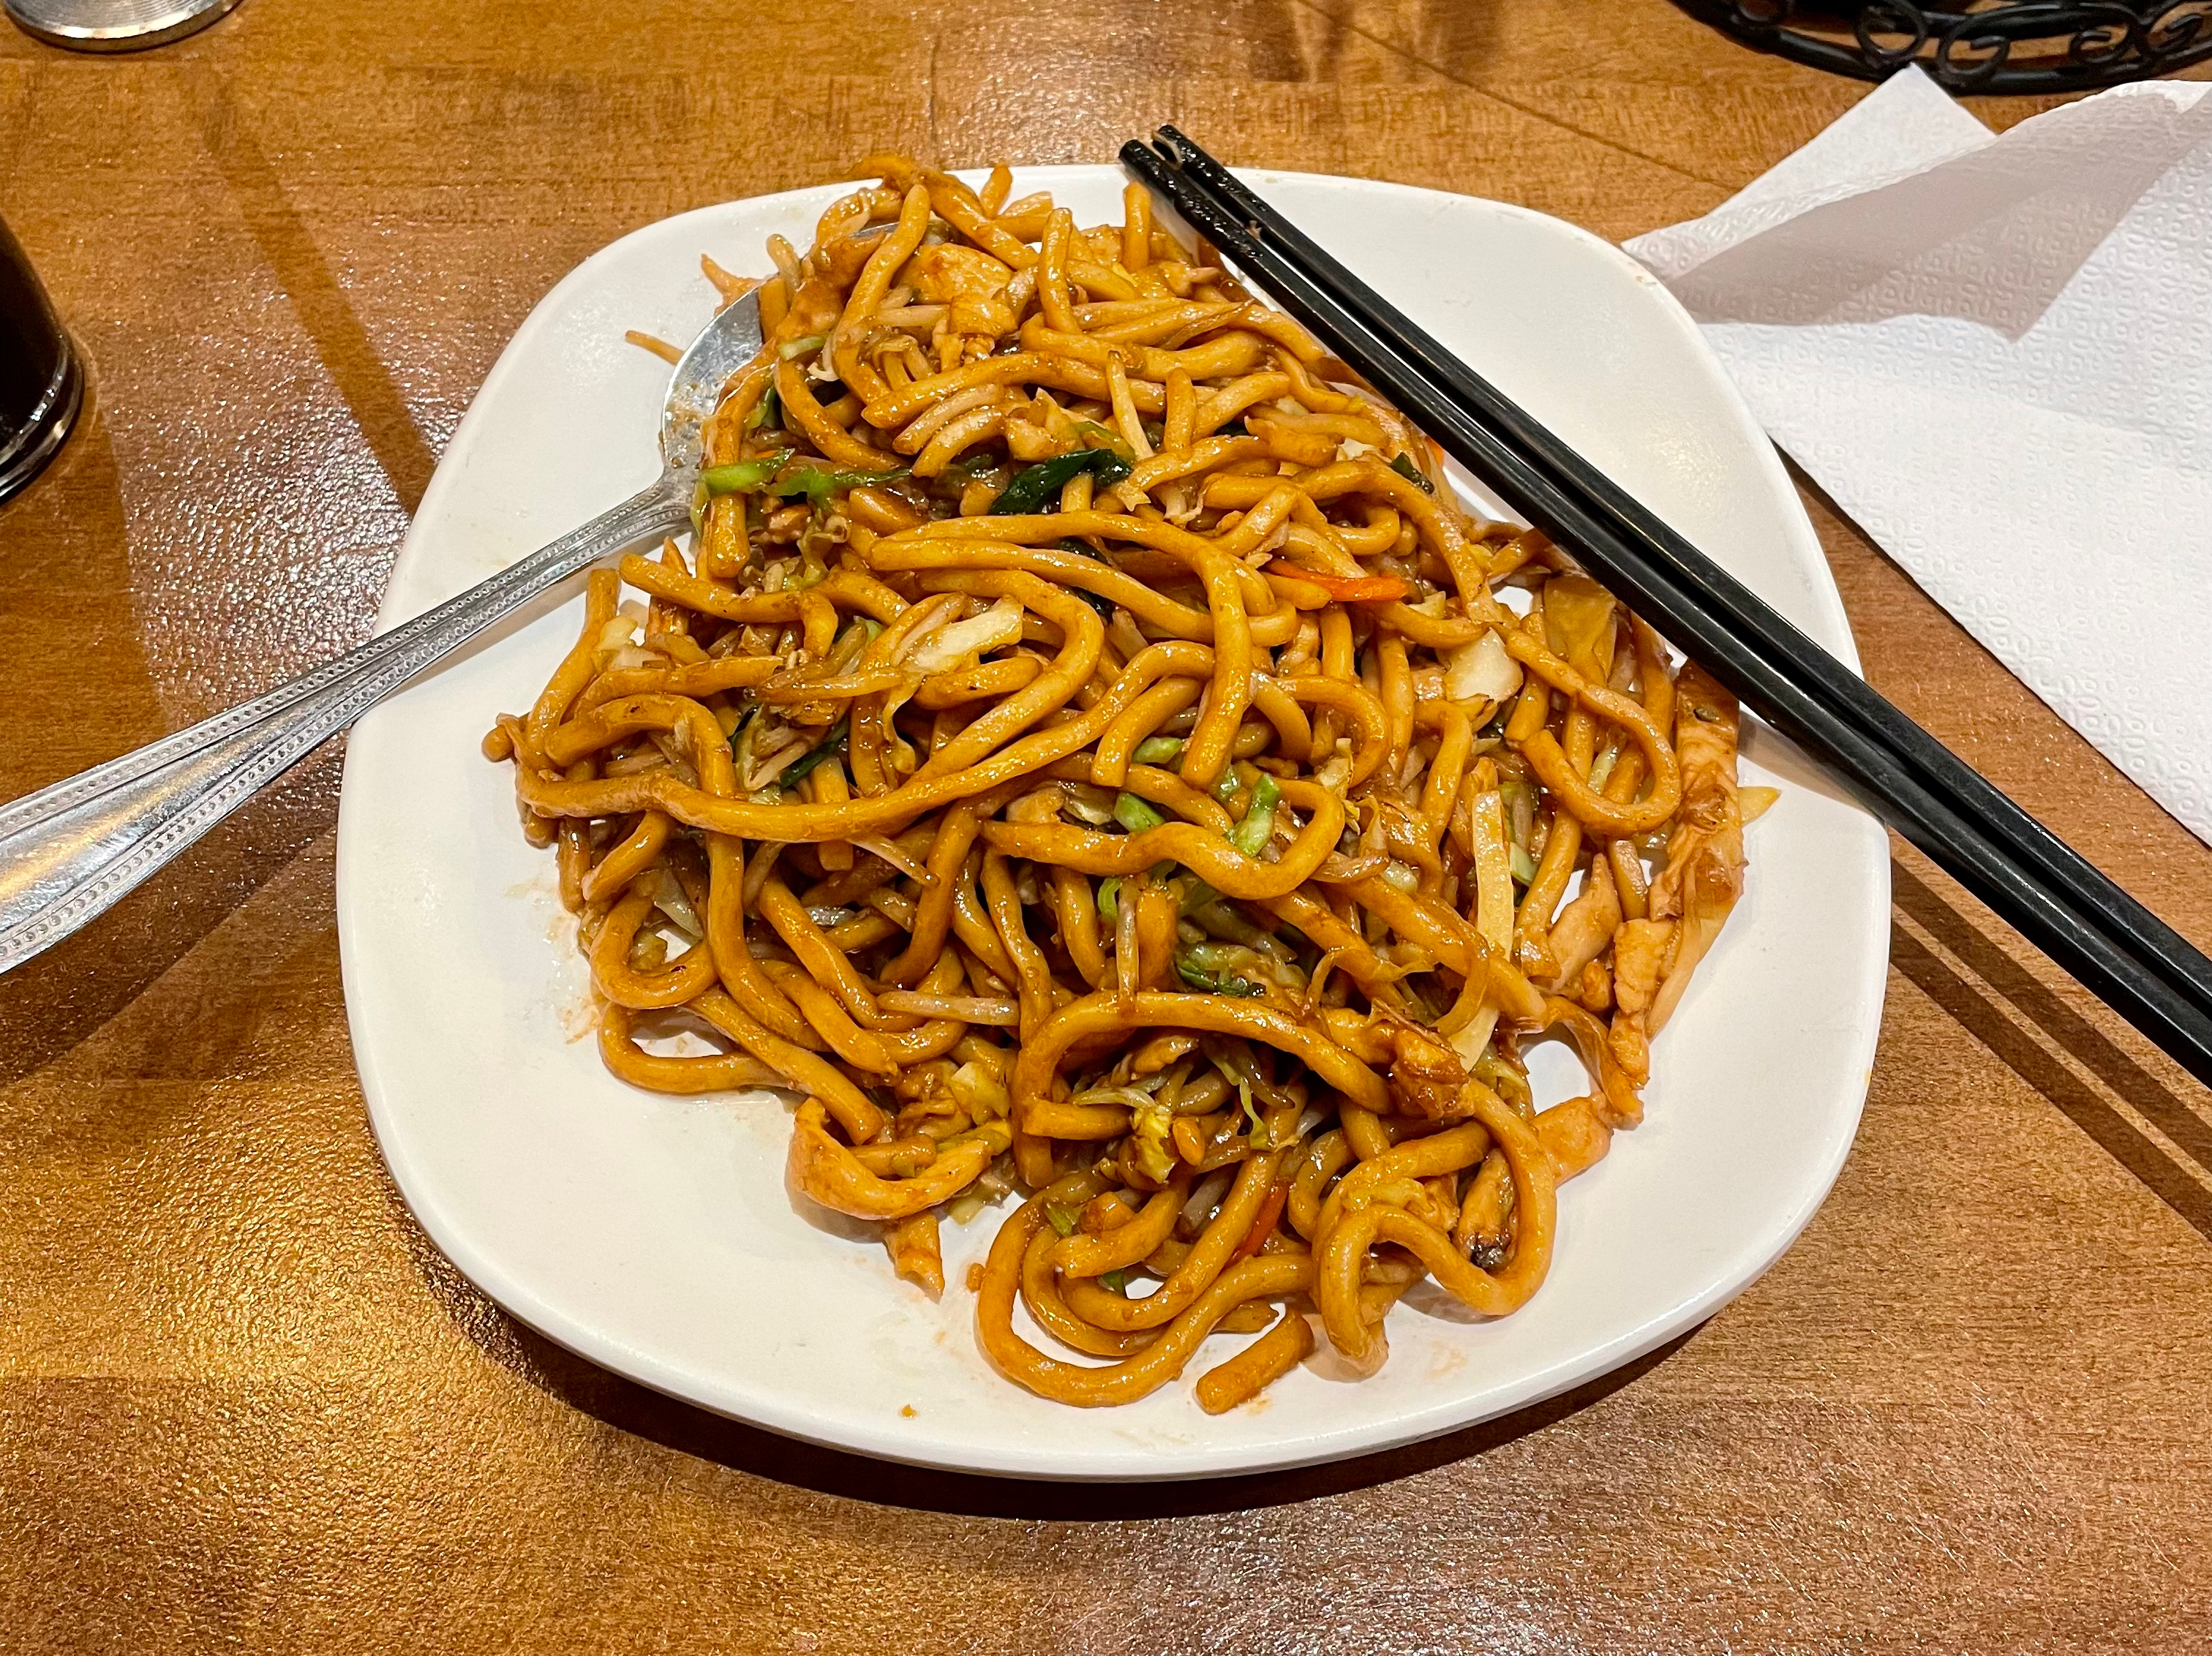 家常炒麵 / House Fried Noodle; $13.99